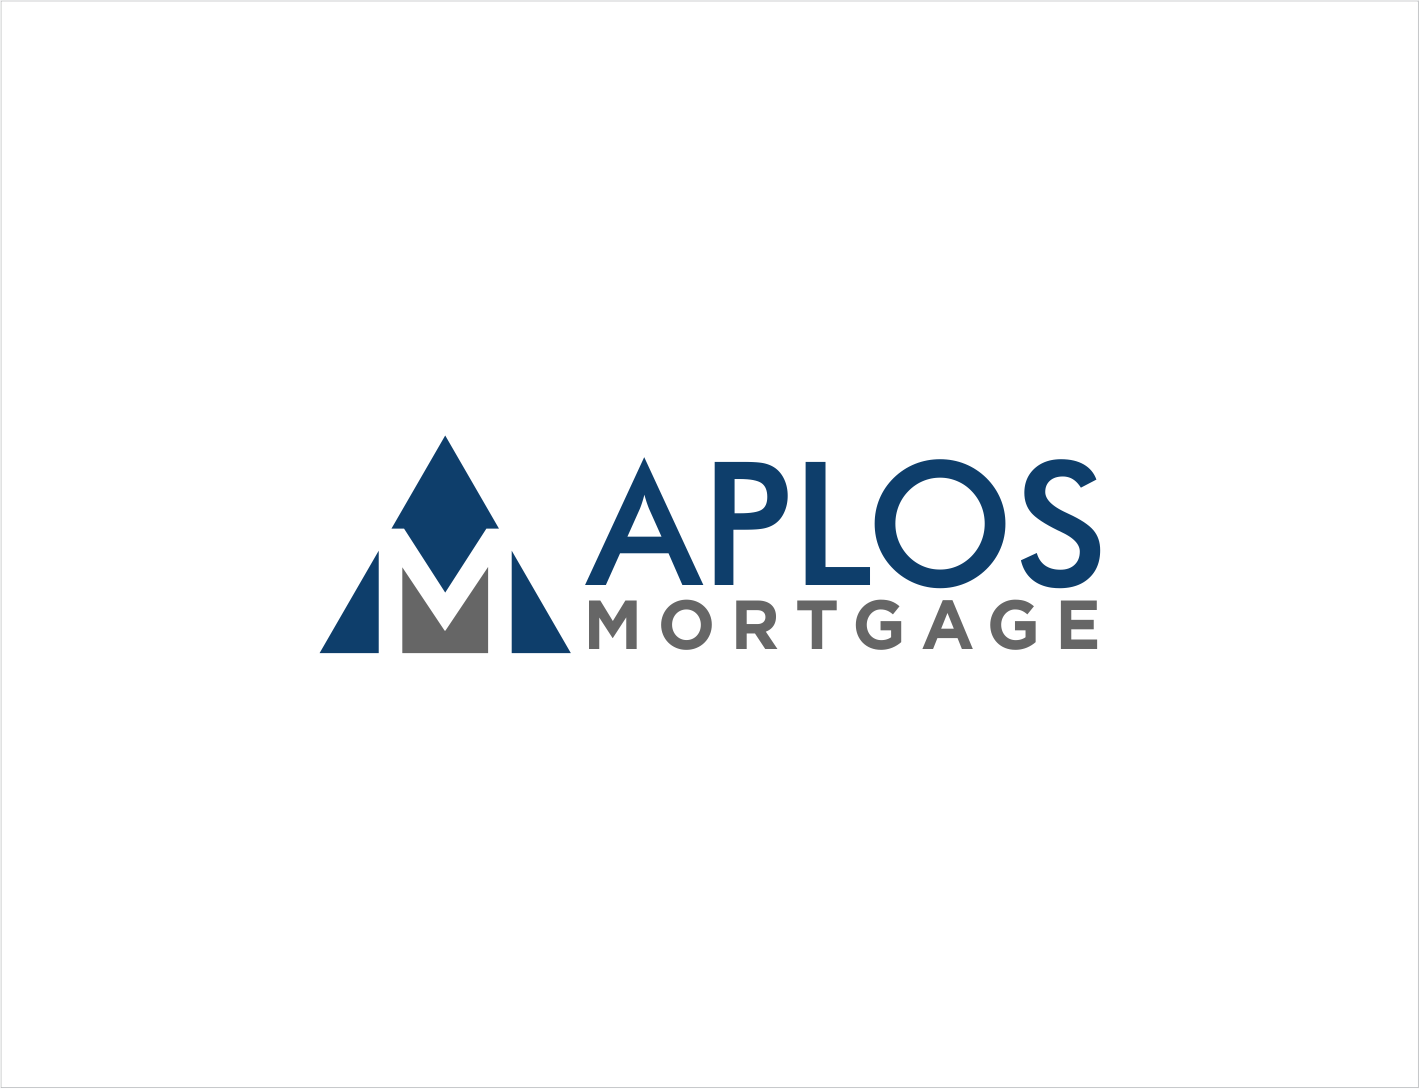 Aplos Mortgage